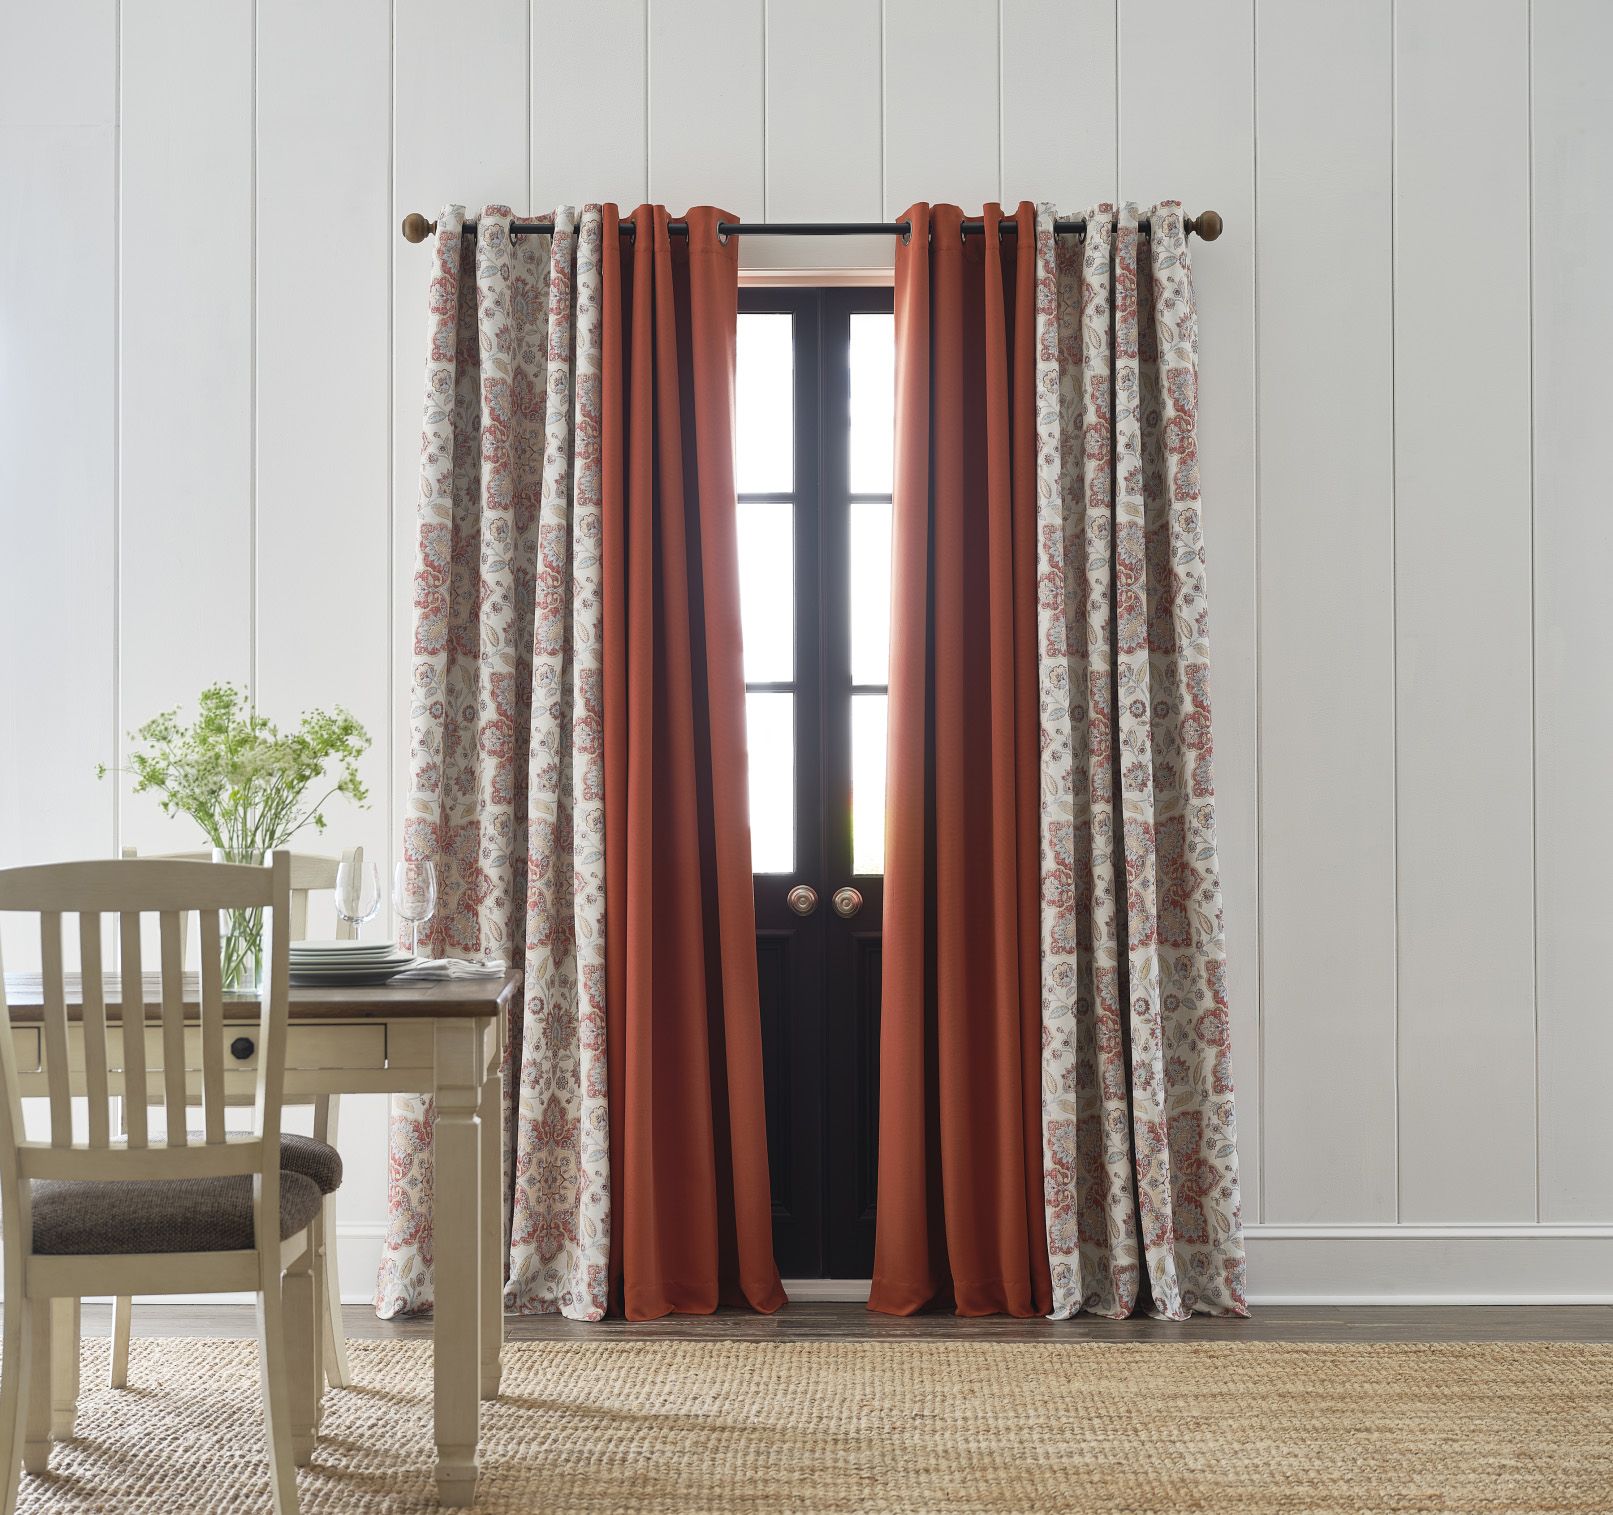 Window Treatments, Floor Length Curtains For Short Windows